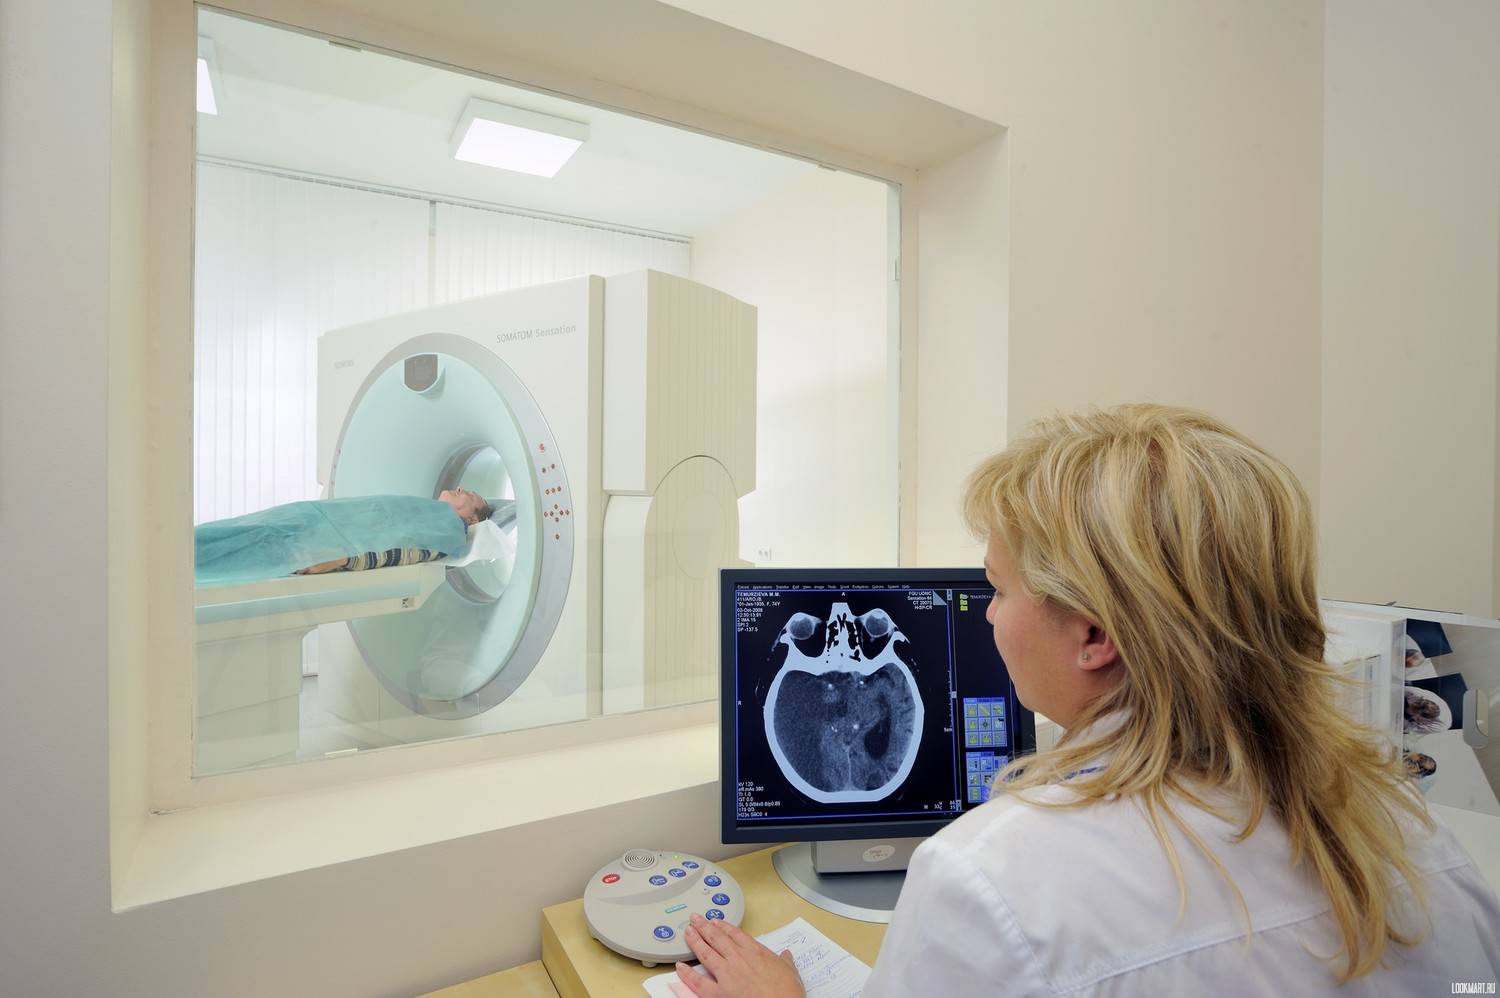 Кт брюшной полости: что это такое и для чего делают компьютерную томографию, цена, что покажет обследование, входит ли желудок, грудная клетка и другие органы?